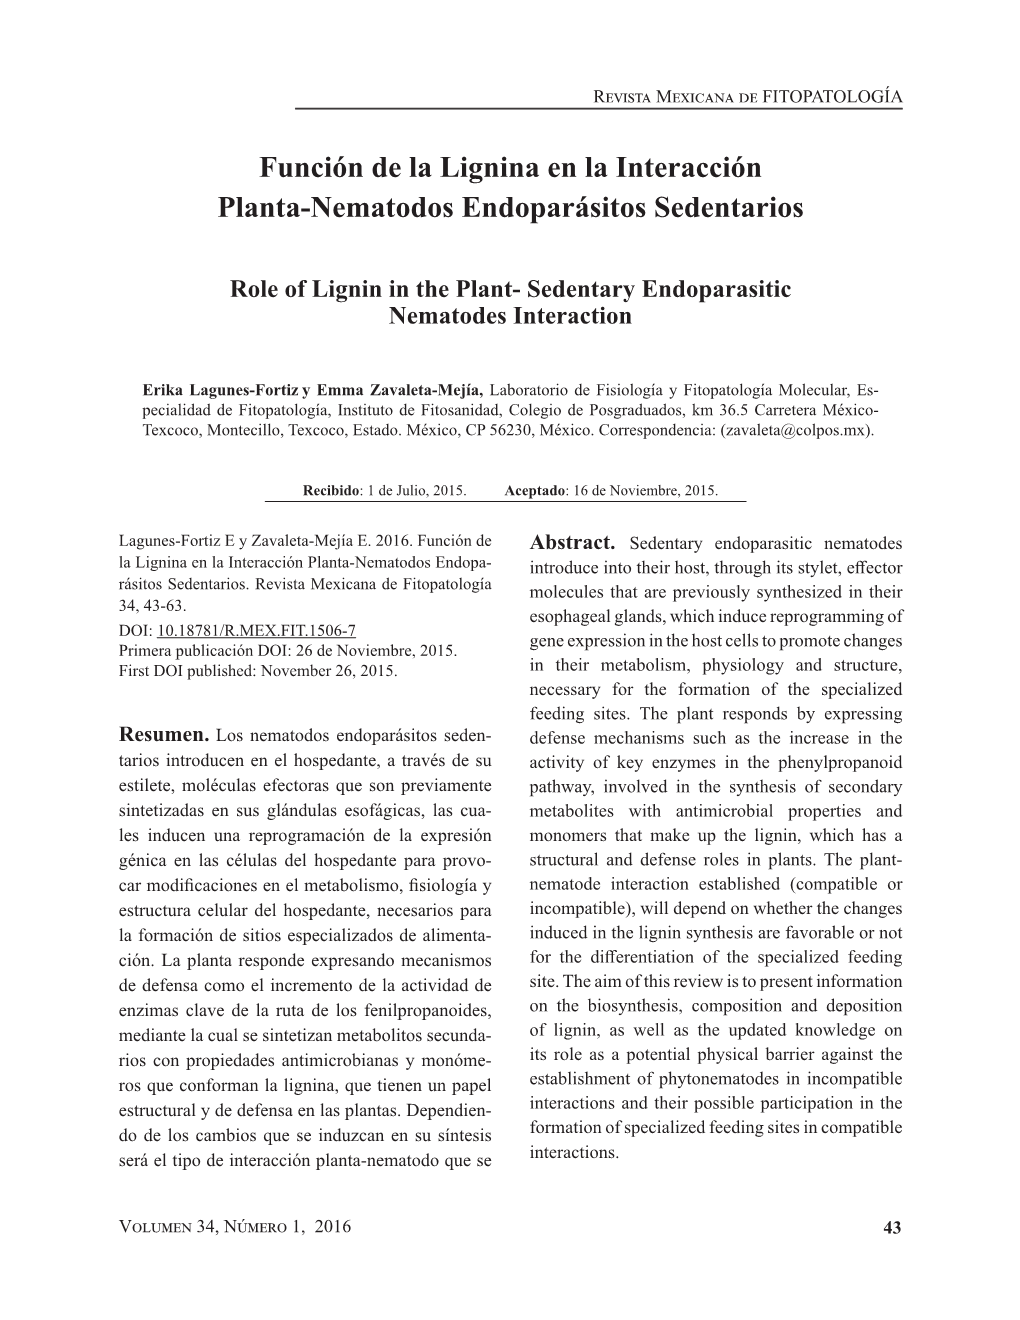 Función De La Lignina En La Interacción Planta-Nematodos Endoparásitos Sedentarios